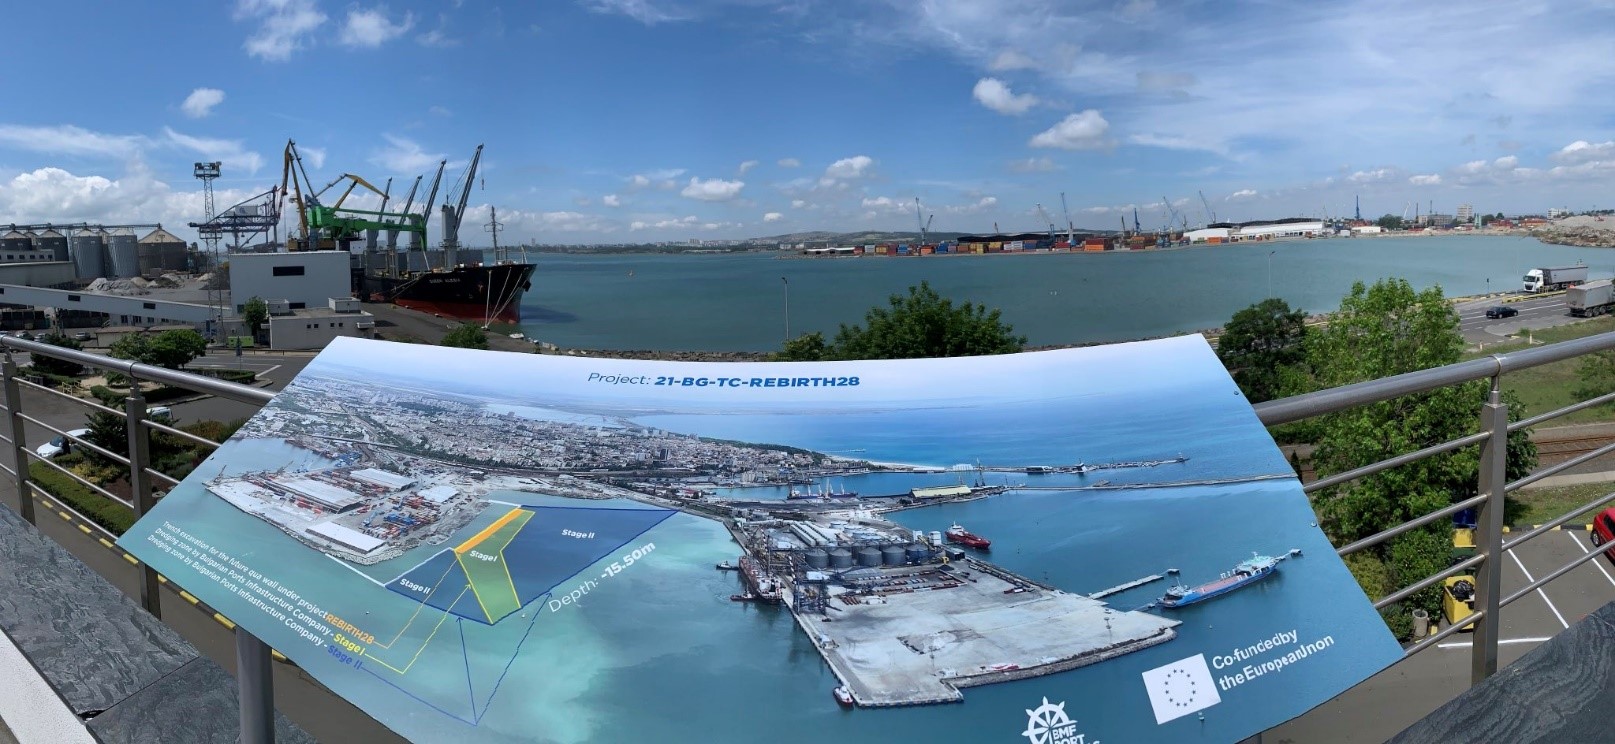 Политиката на сближаване на ЕС съществено подобрява работата на българските пристанища